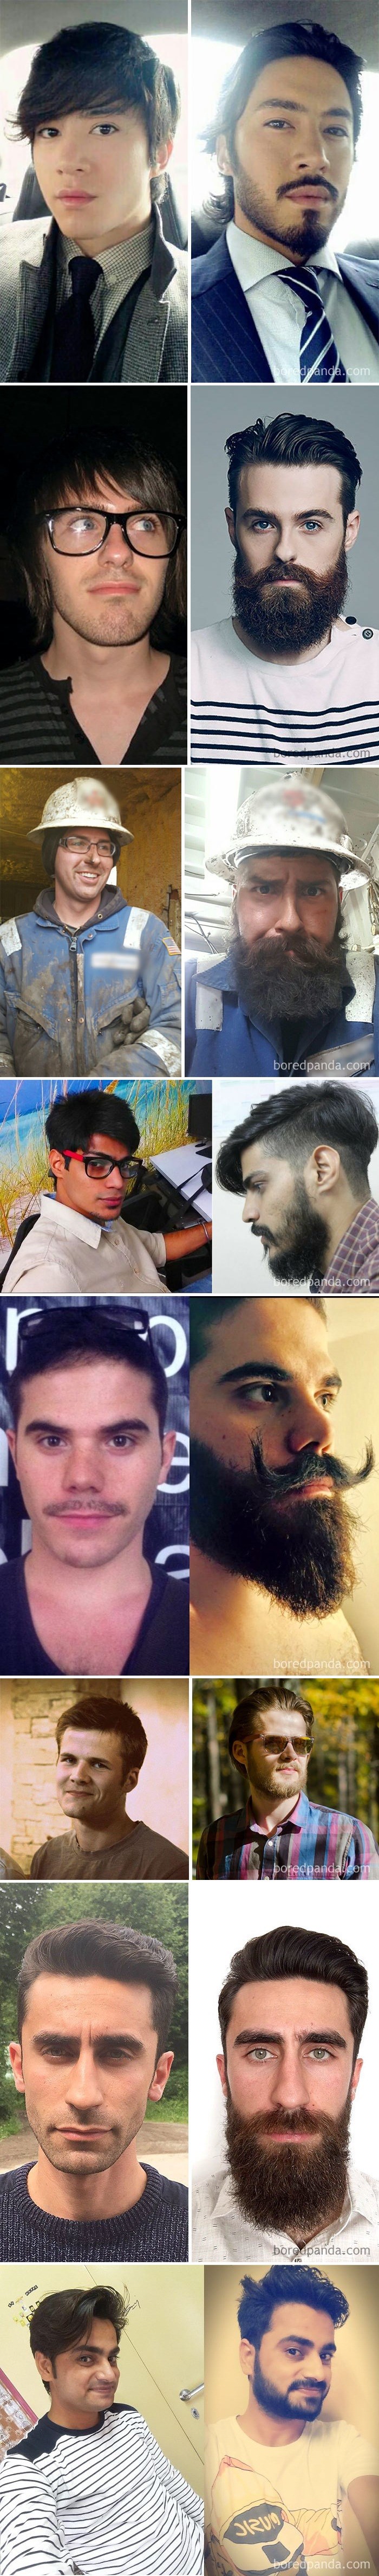 Muškarci su objavili svoje fotke prije i nakon puštanja brade, žene se slažu - s bradom su privlačniji!